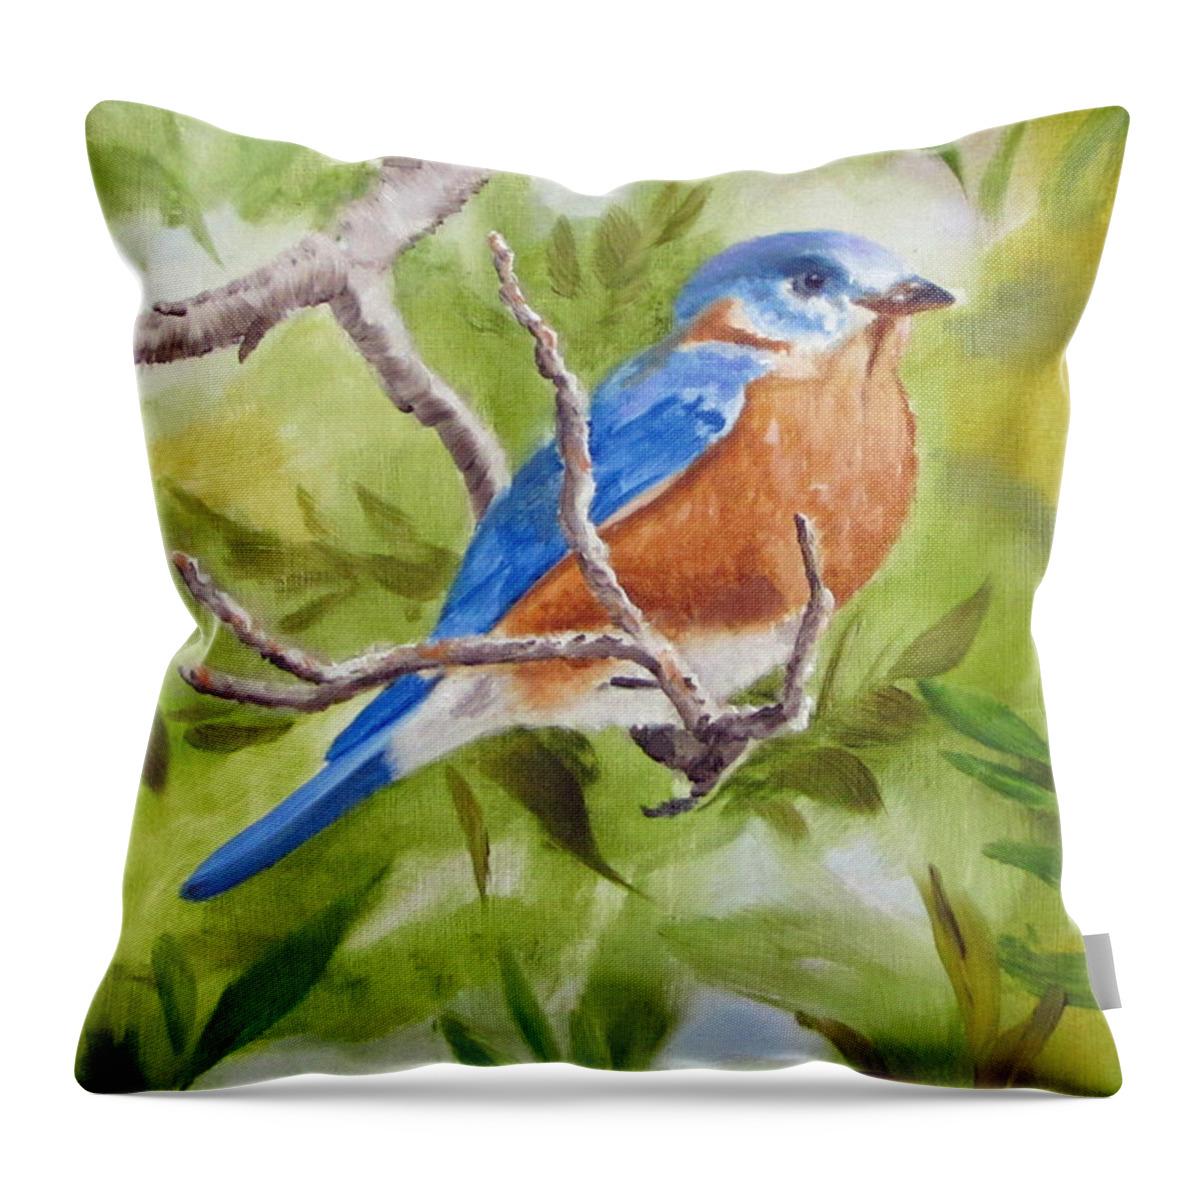 Bluebird Throw Pillow featuring the painting Mr. Bluebird by Jimmie Bartlett